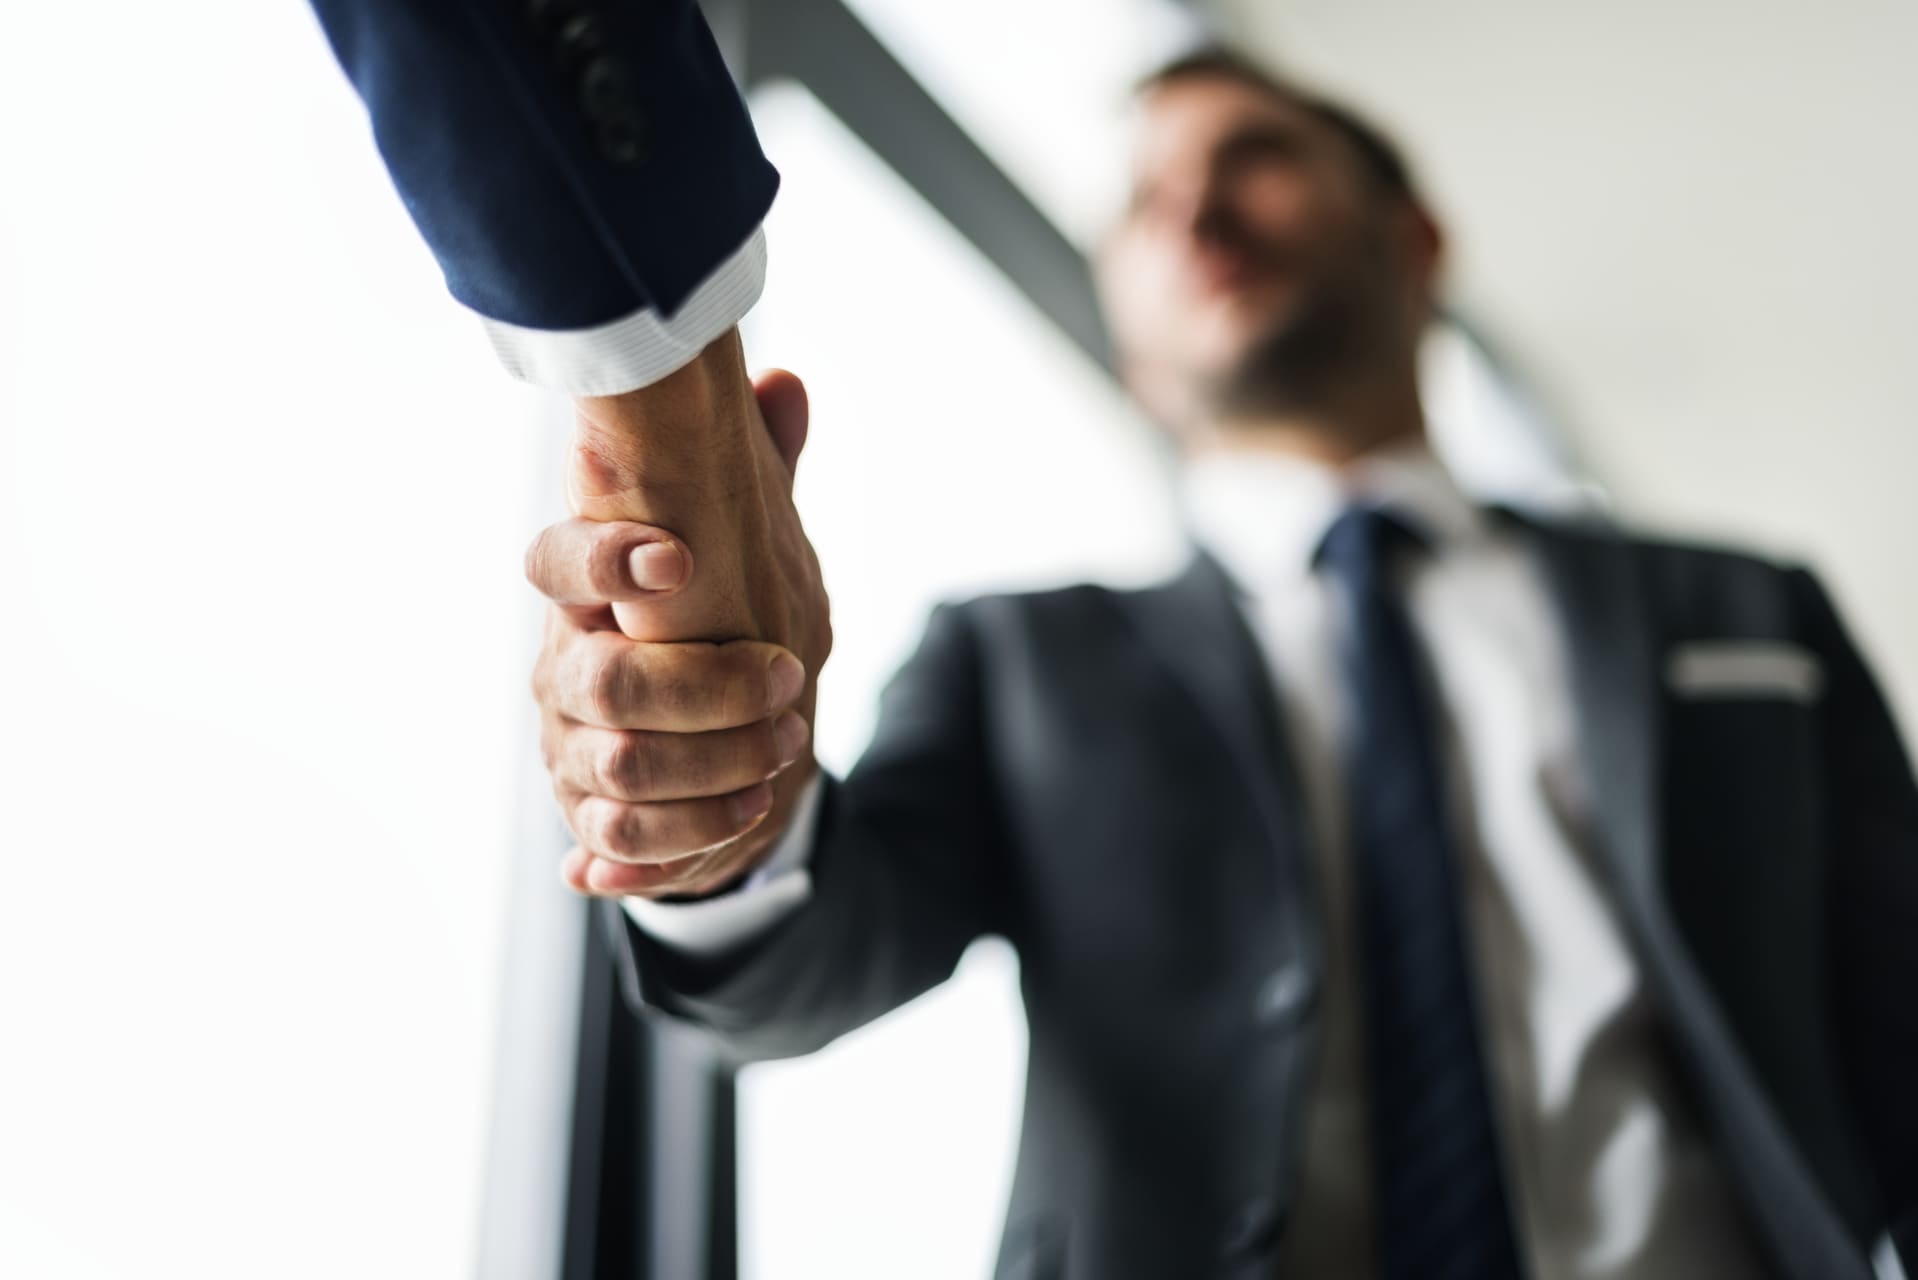 Un primer plano de un apretón de manos entre dos hombres de negocios, con énfasis en la conexión y acuerdo, reflejando la confianza y colaboración en el entorno profesional.